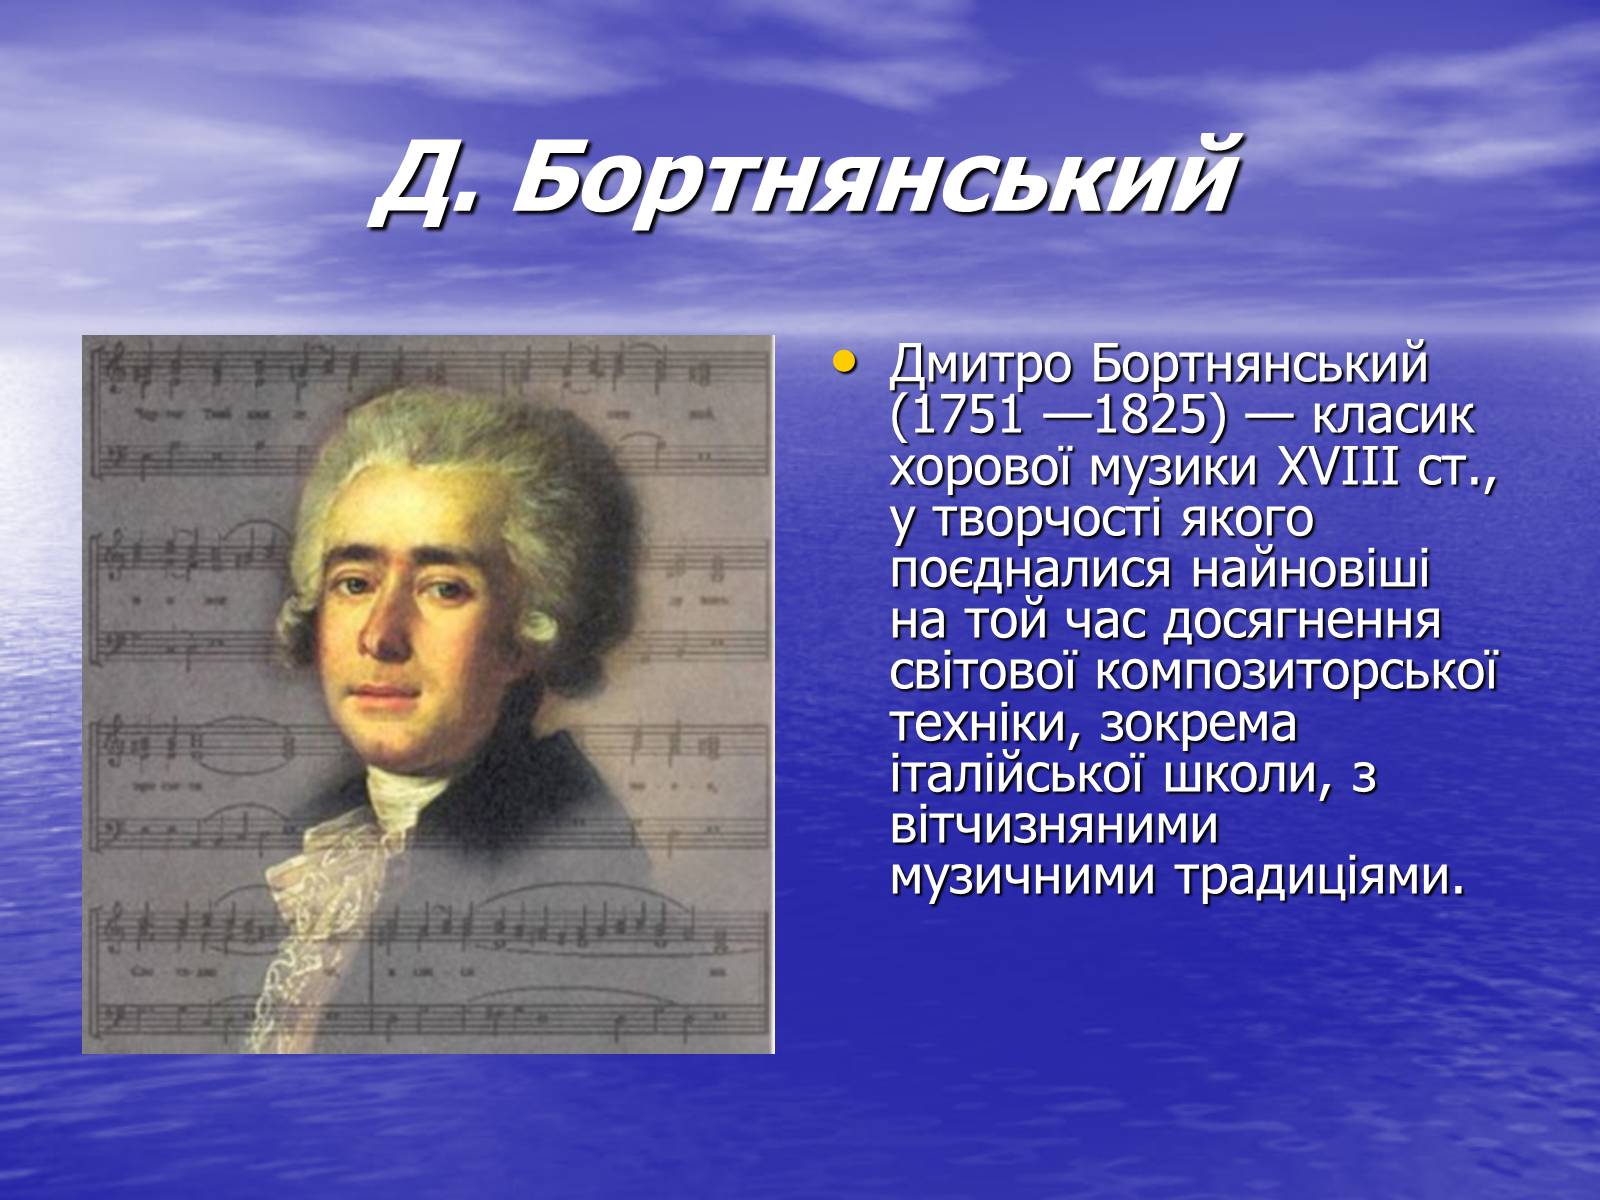 Бортнянский композитор духовная музыка. Д.С. Бортнянский (1751-1825).